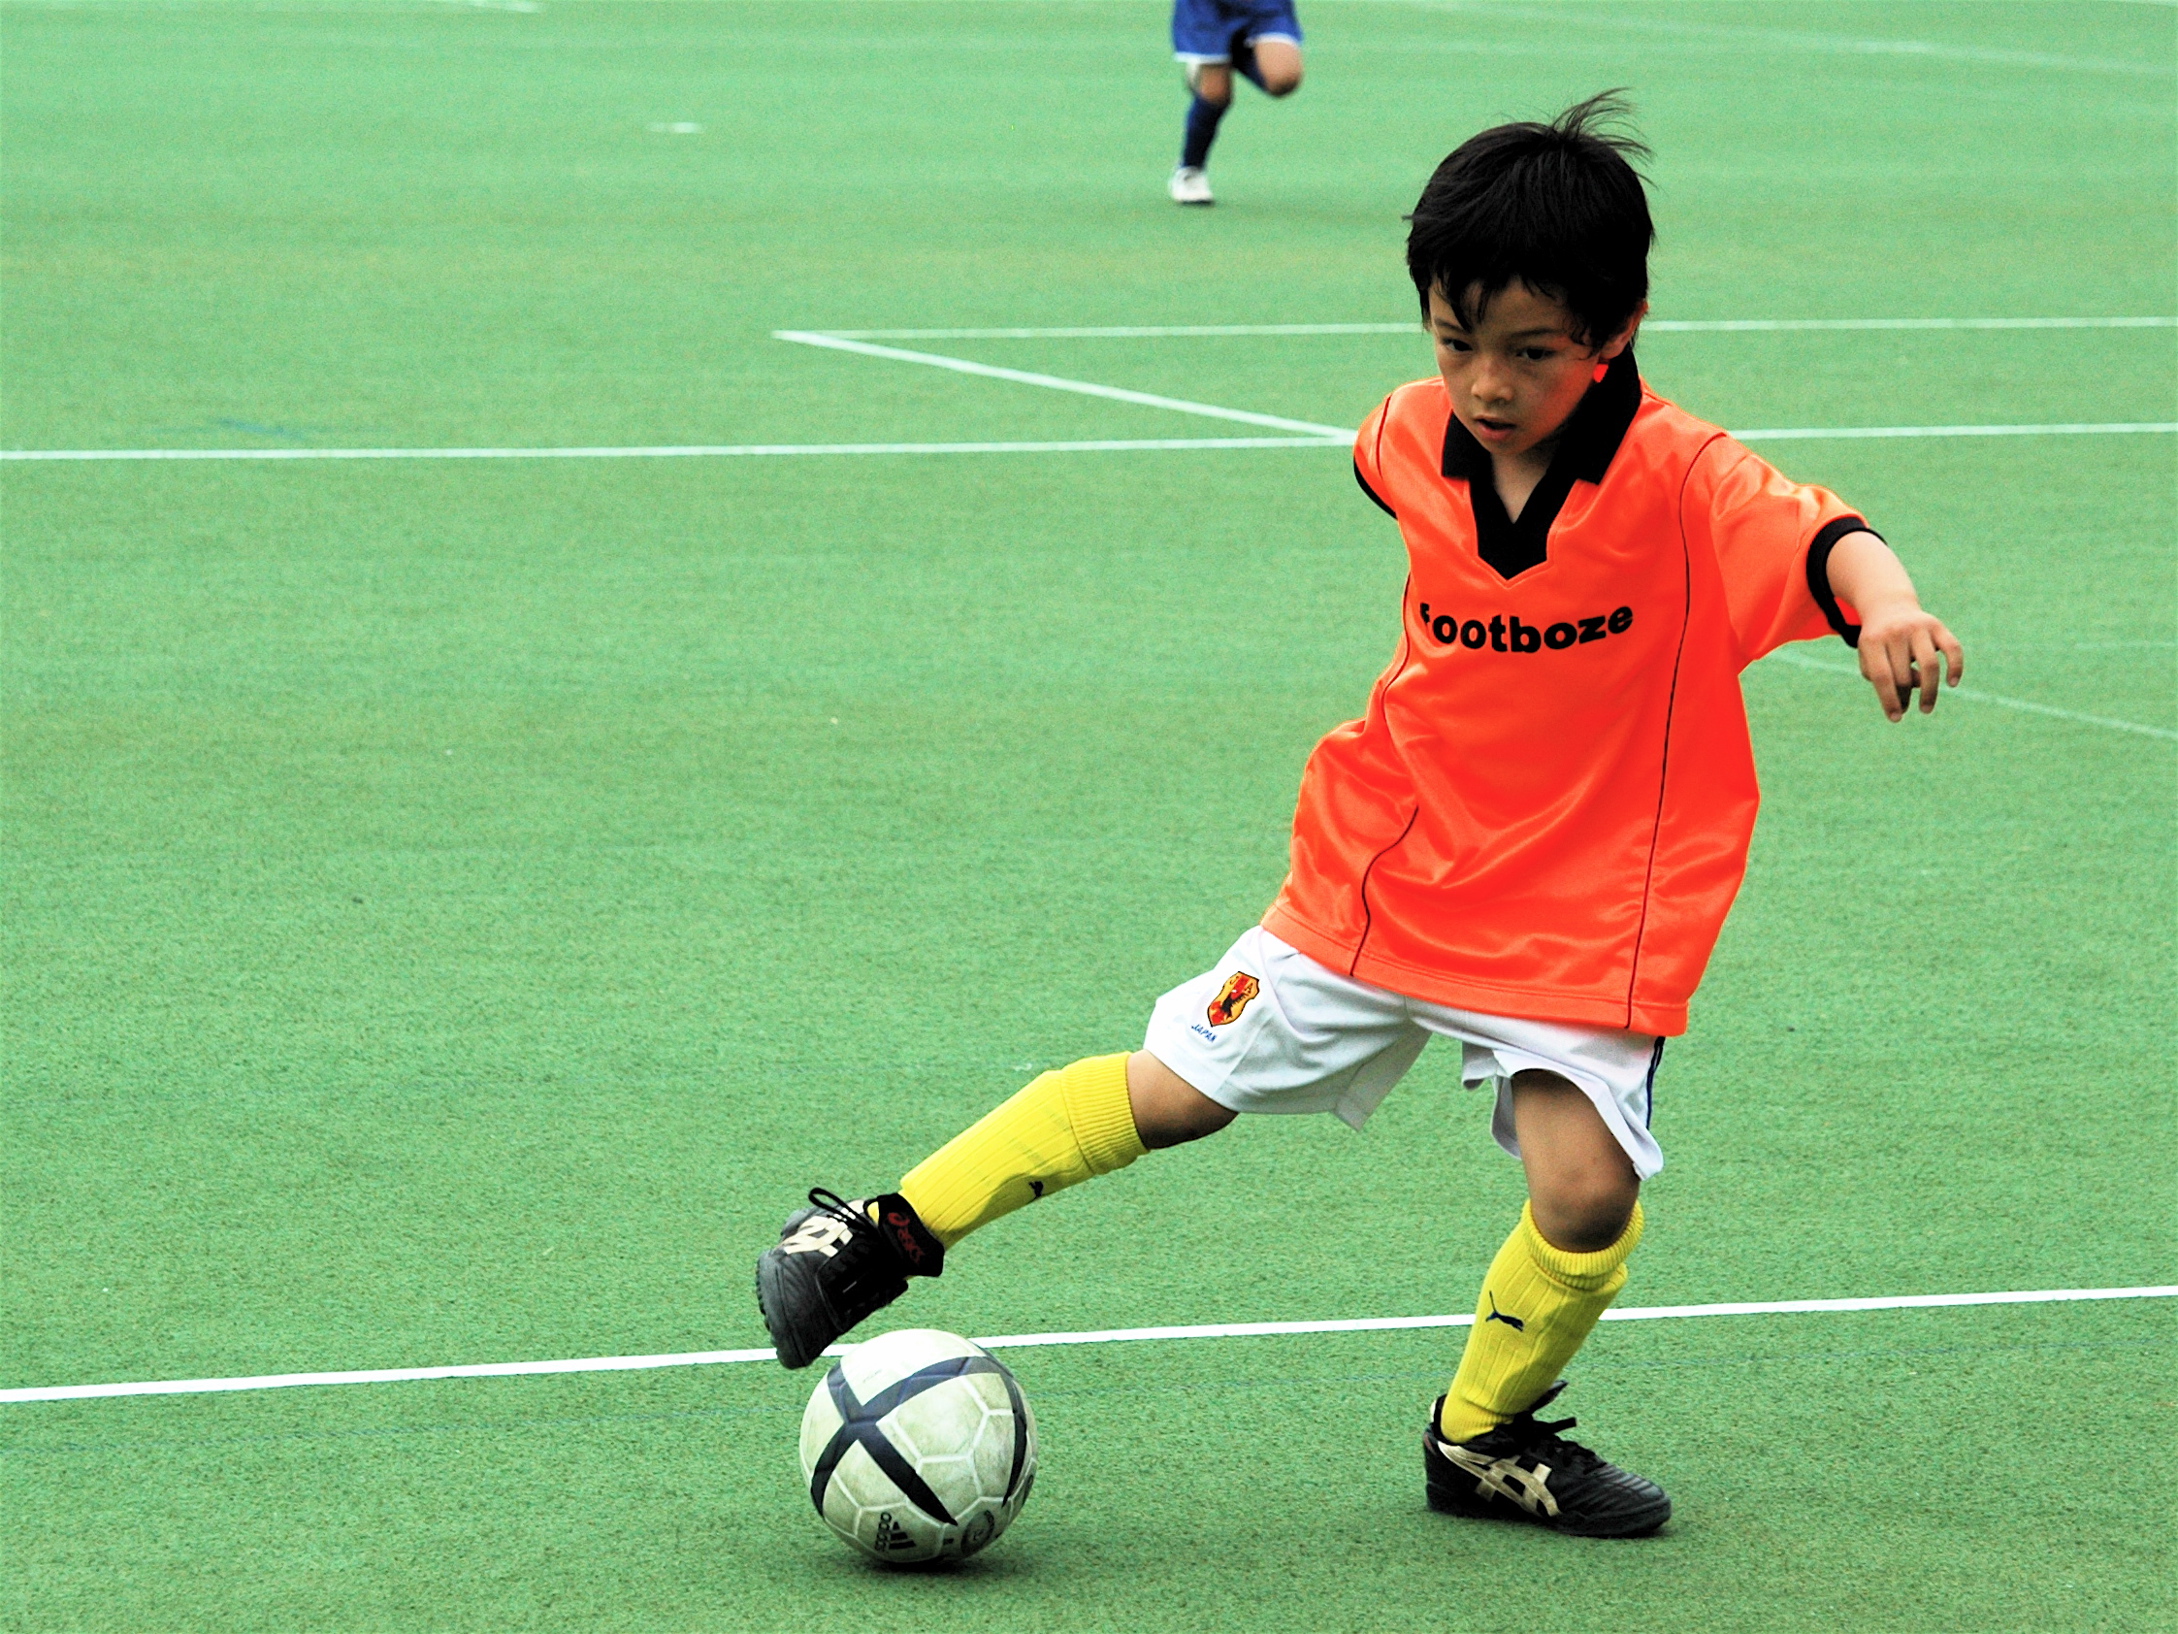 a child wearing an orange soccer shirt dribbles a soccer ball